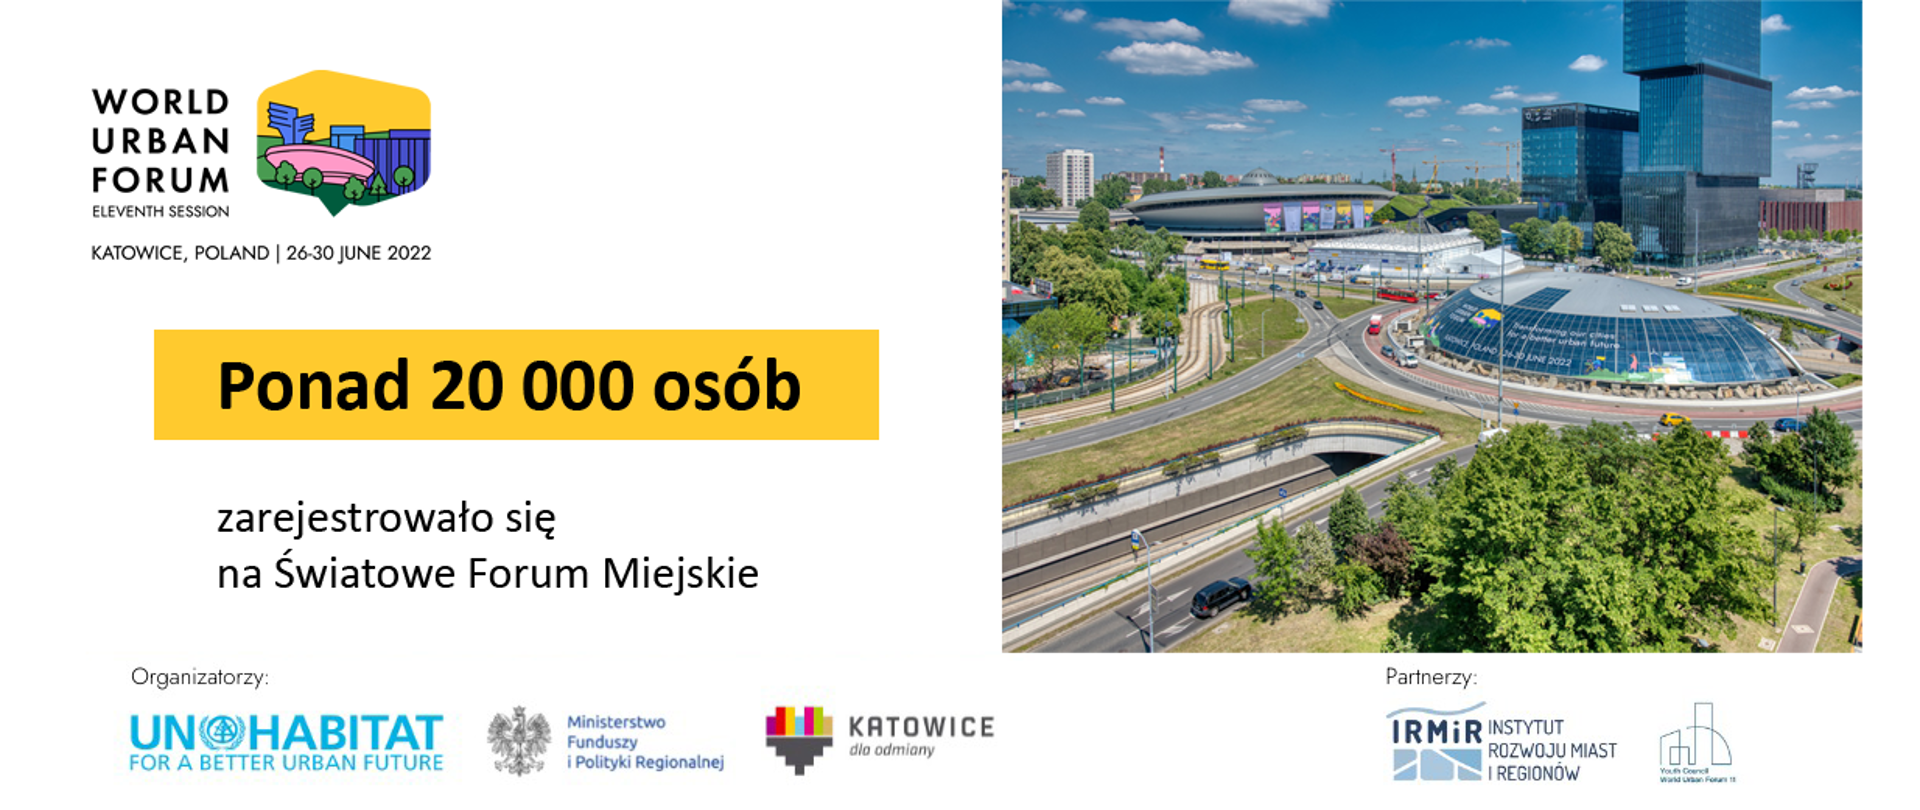 Po lewej stronie grafiki napis: "Ponad 20 000 osób zarejestrowało się na Światowe Forum Miejskie". Po prawej zdjęcie Katowic. Na dole logotypy.